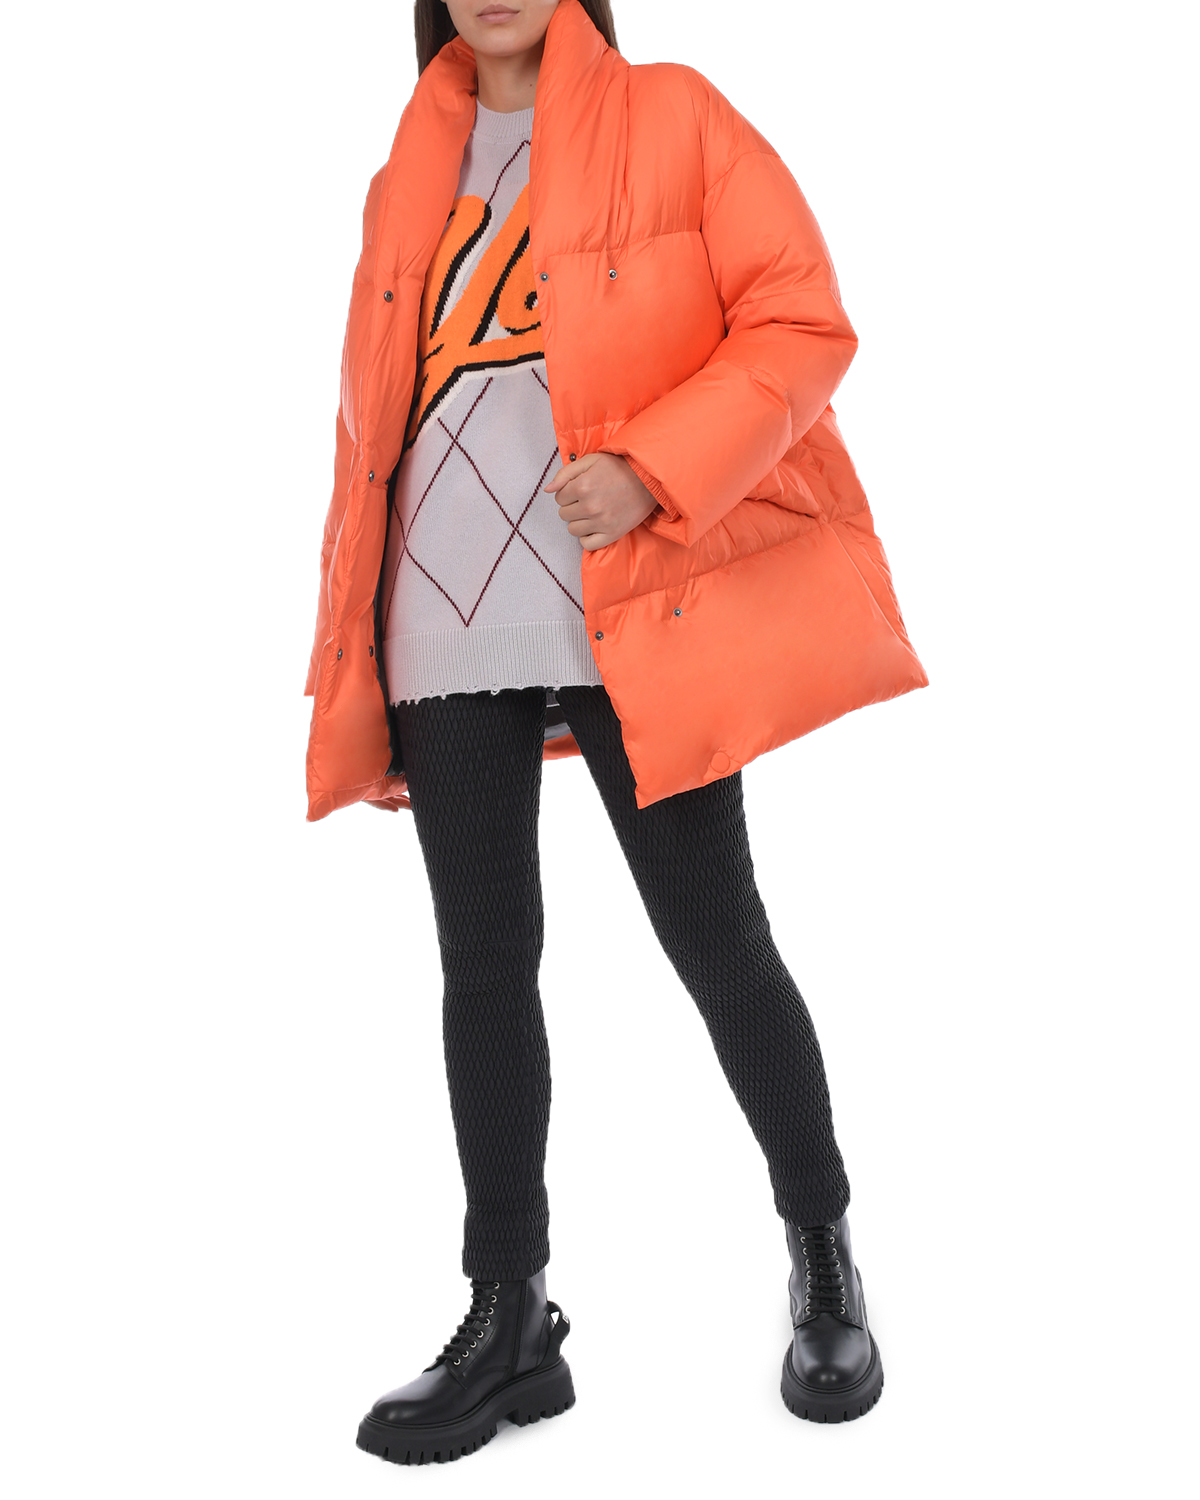 Оранжевая куртка с черным поясом Naumi, размер 36, цвет оранжевый - фото 3